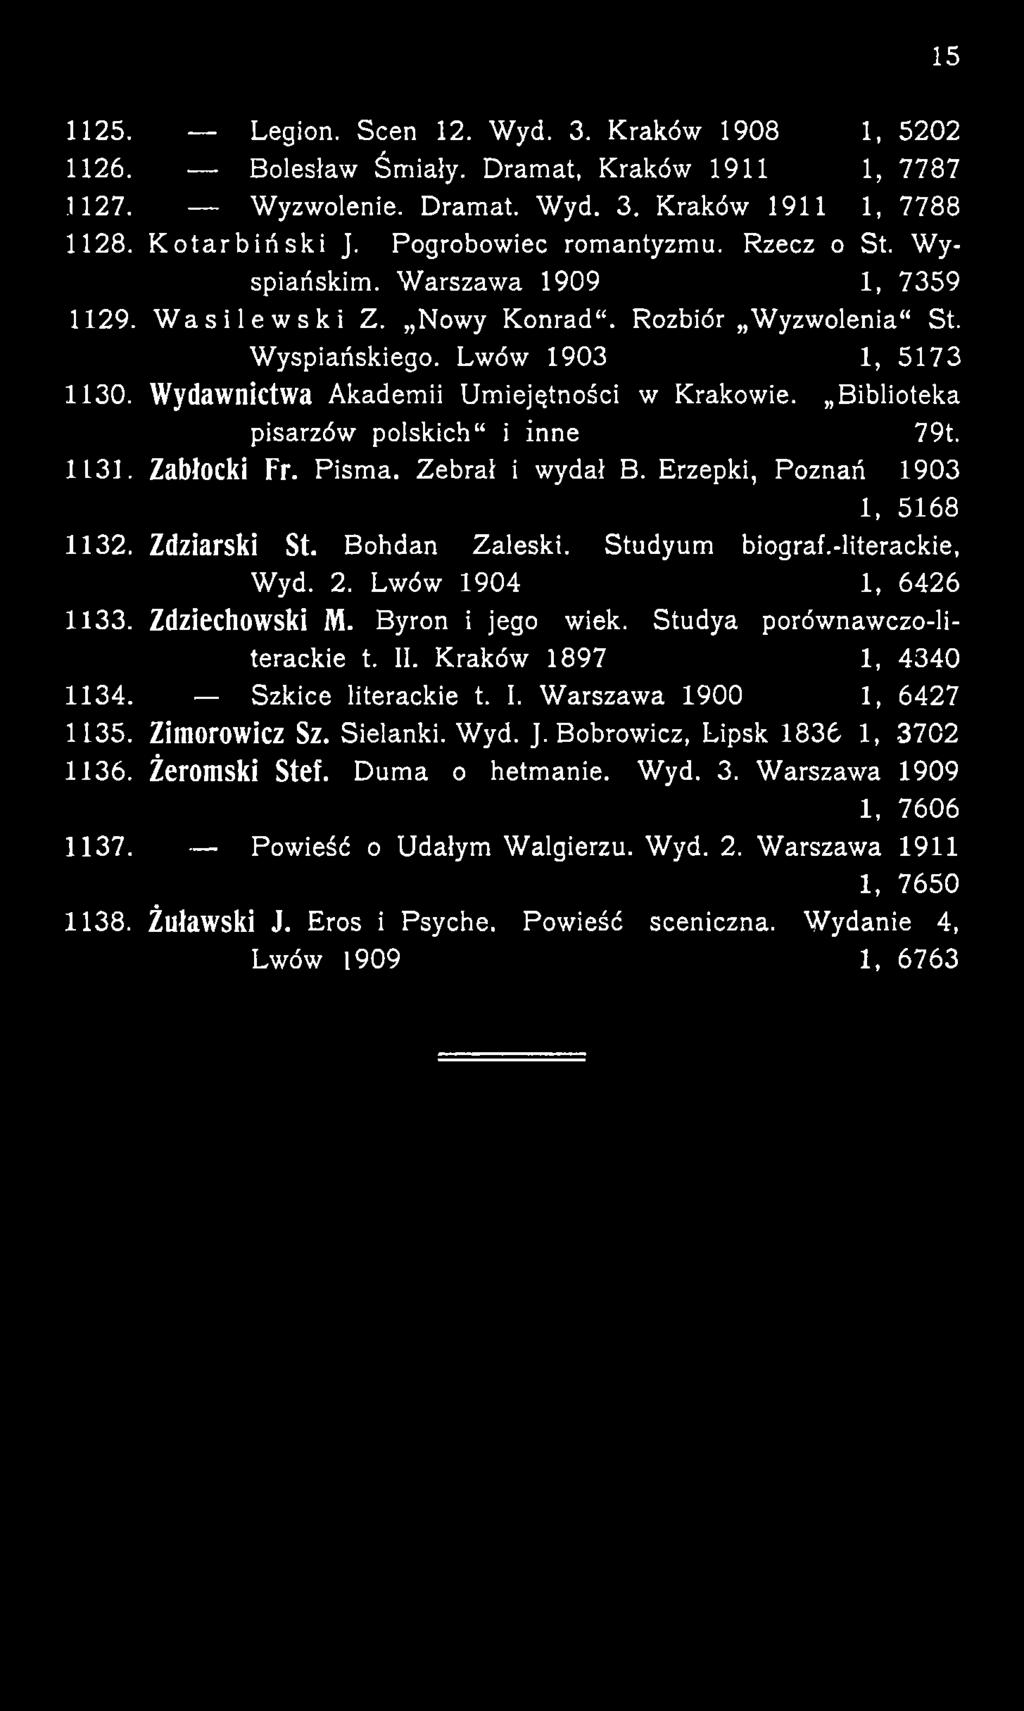 Zdziarski St. Bohdan Zaleski. Studyum biograf.-literackie, Wyd. 2. Lwów 1904 1, 6426 1133. Zdziechowski M. Byron i jego wiek.